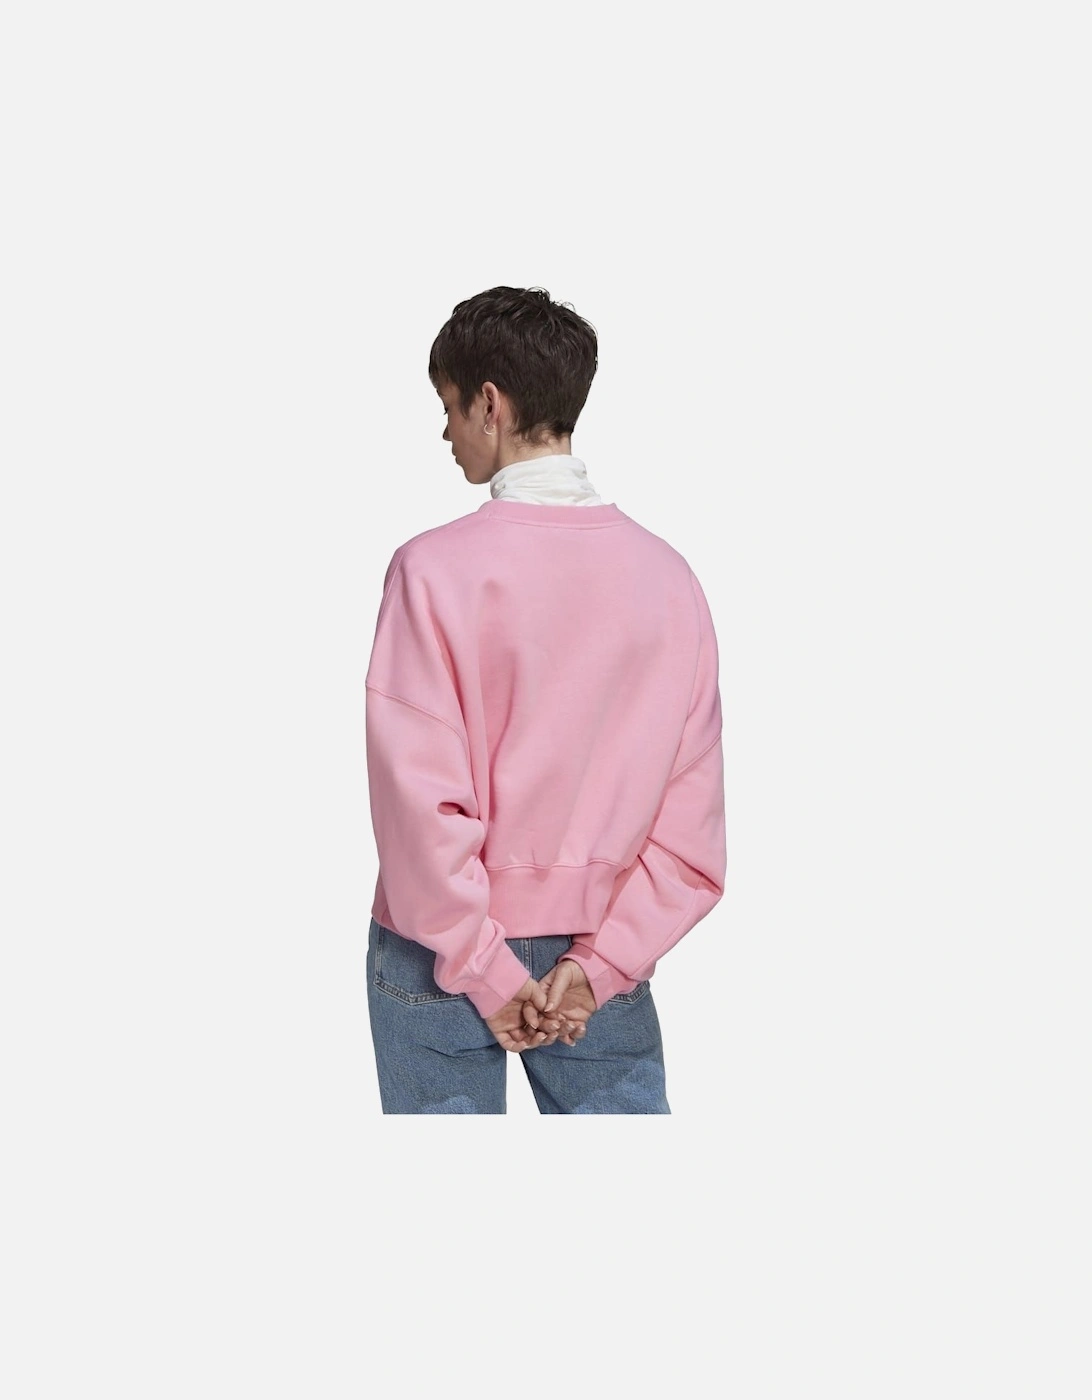 Womens Adicolor Essentials Fleece Sweatshirt